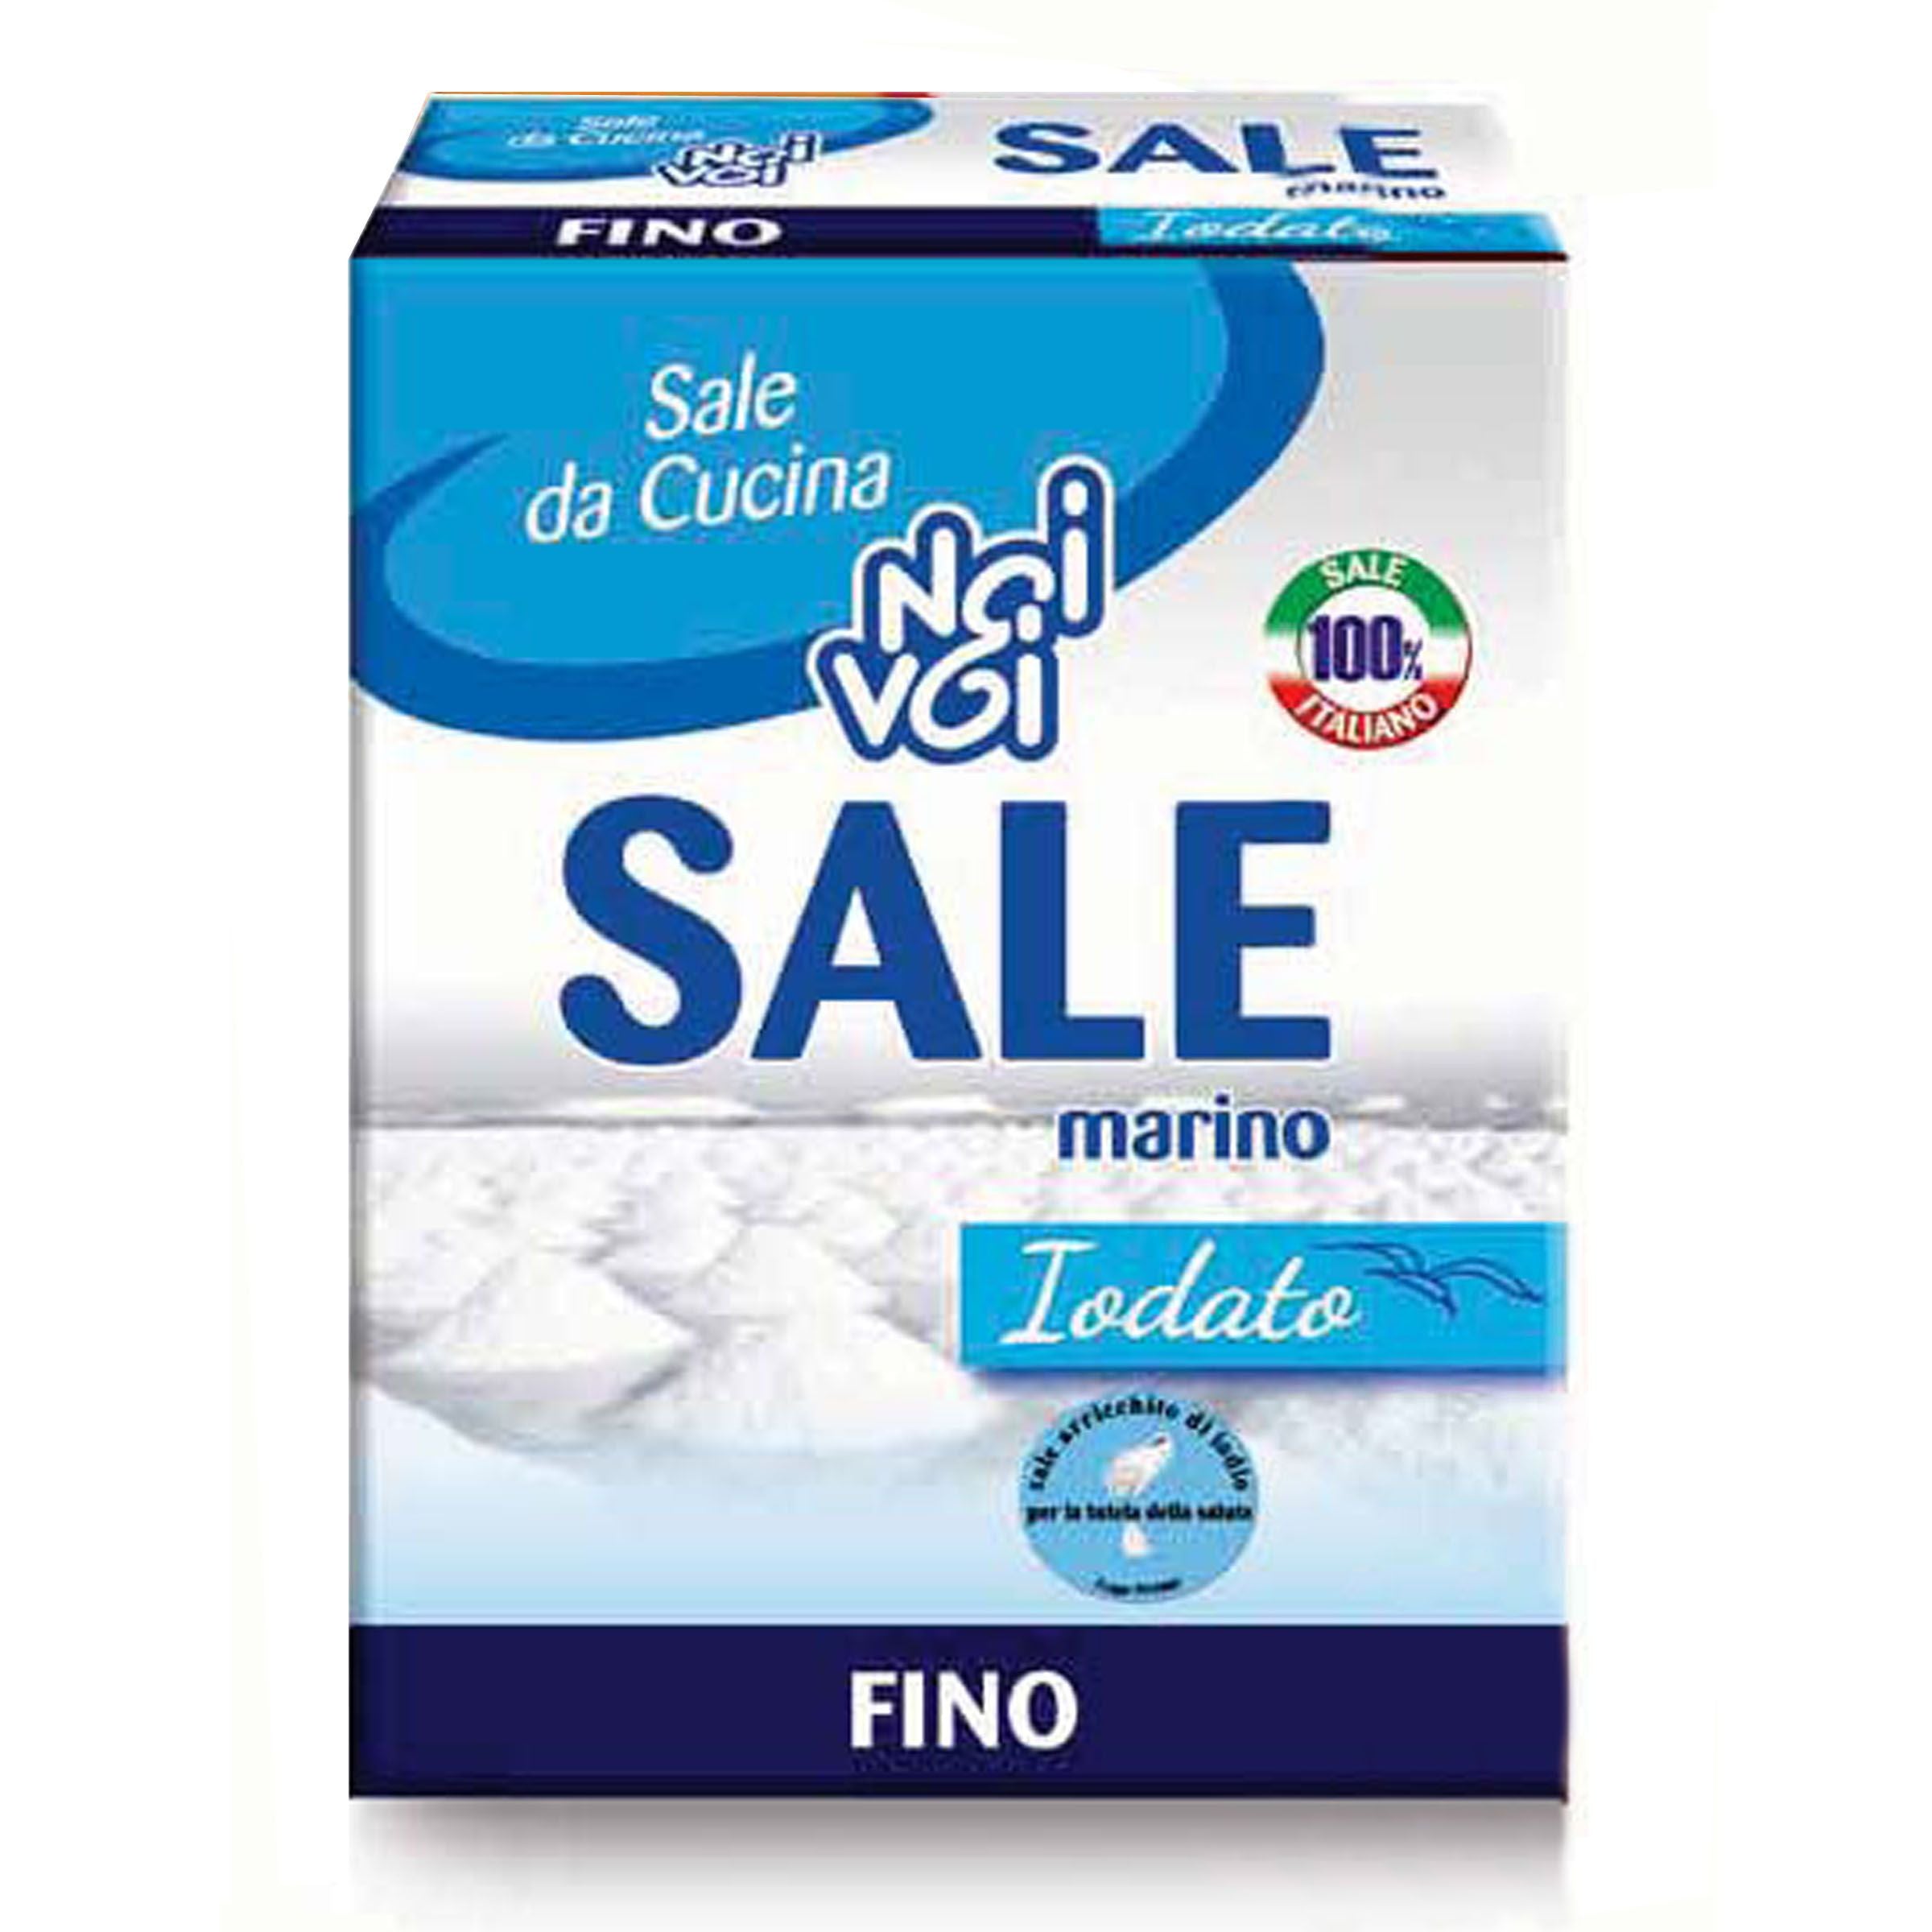 Noi & Voi Sale Fino 1Kg - Little Italy Ltd